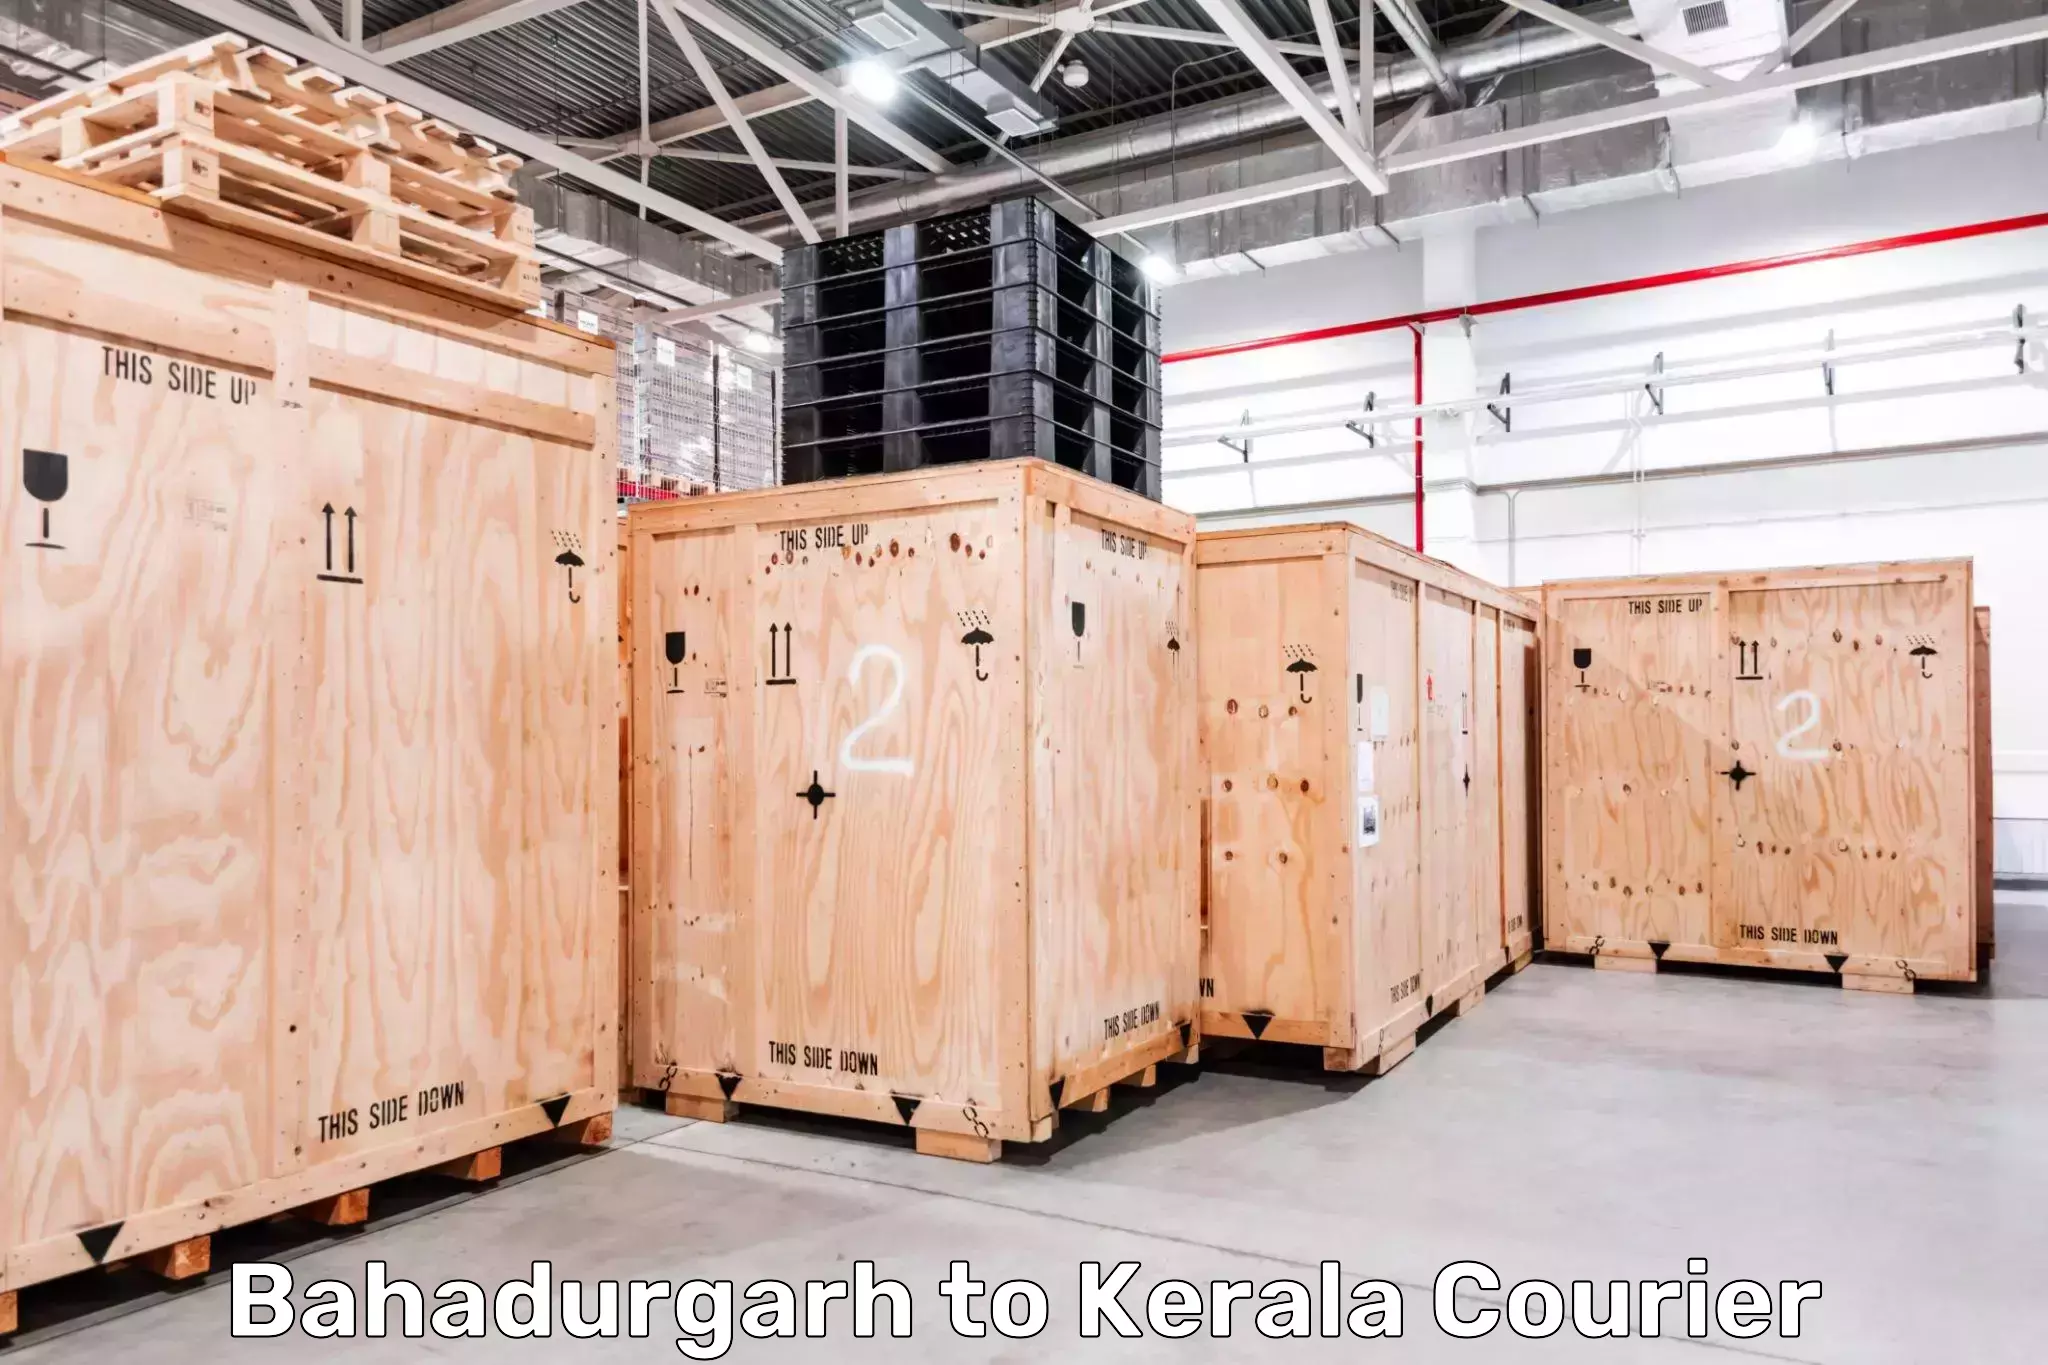 Smart logistics strategies in Bahadurgarh to Kerala